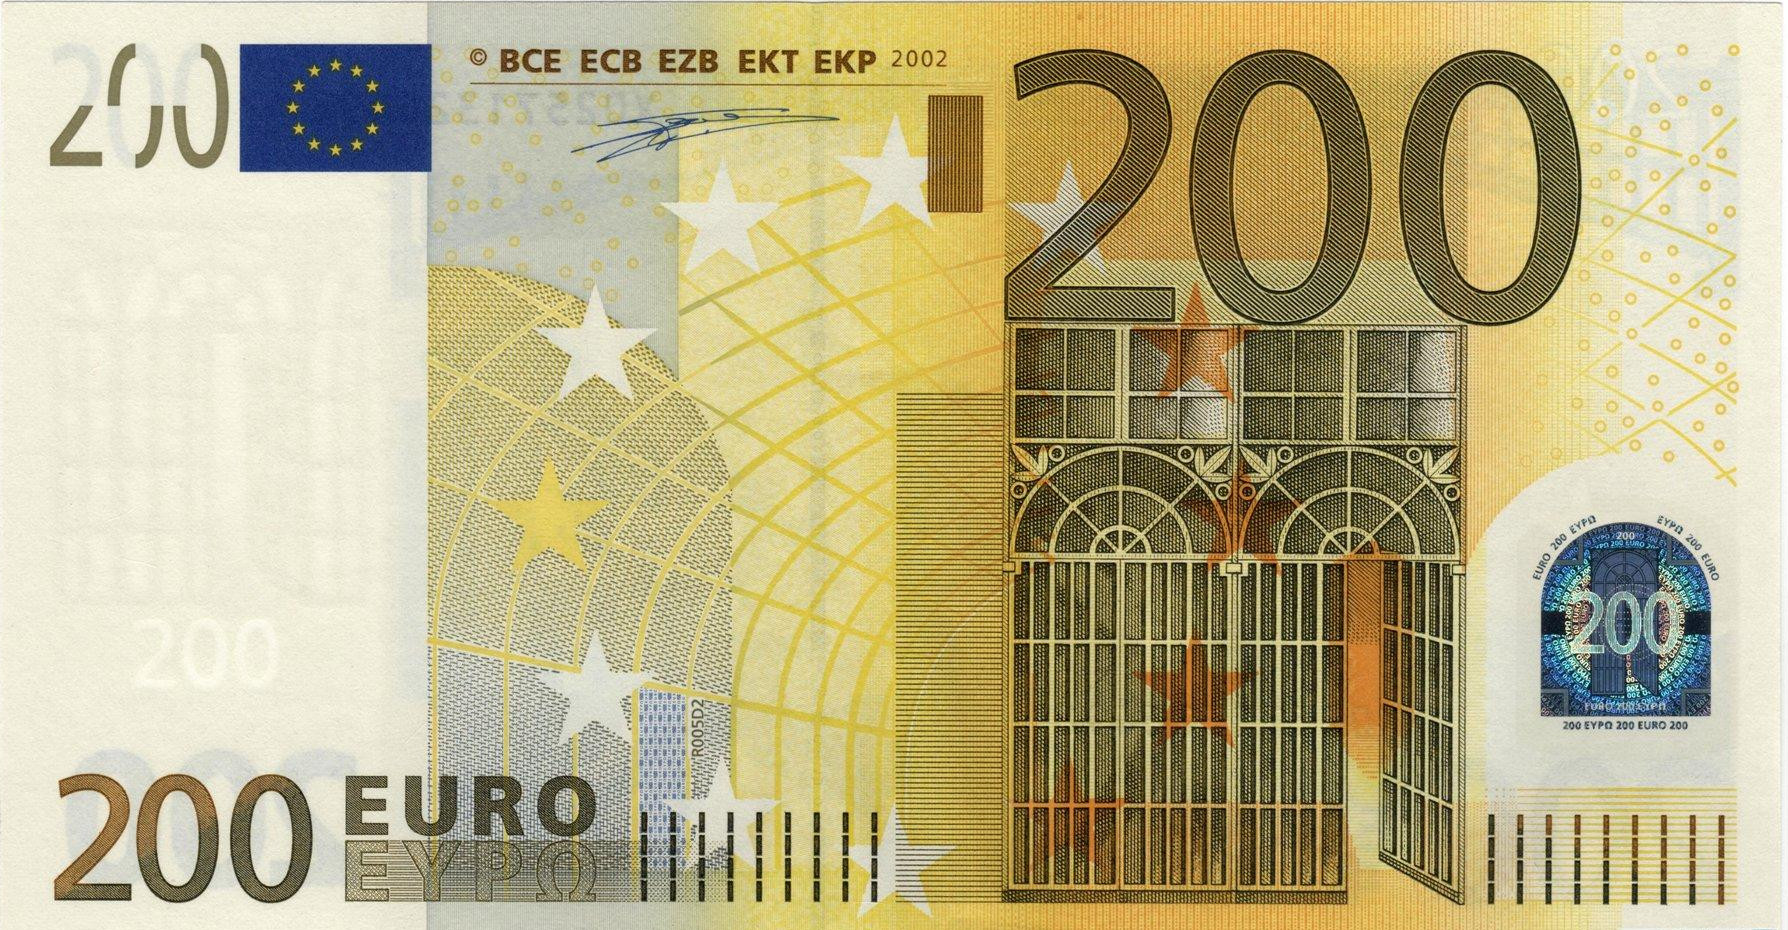 Банкнота 2002 года номиналом 200 евро: цвет – желтый, архитектурный стиль – индустриальный (модерн). Источник http://banknotes.finance.ua/